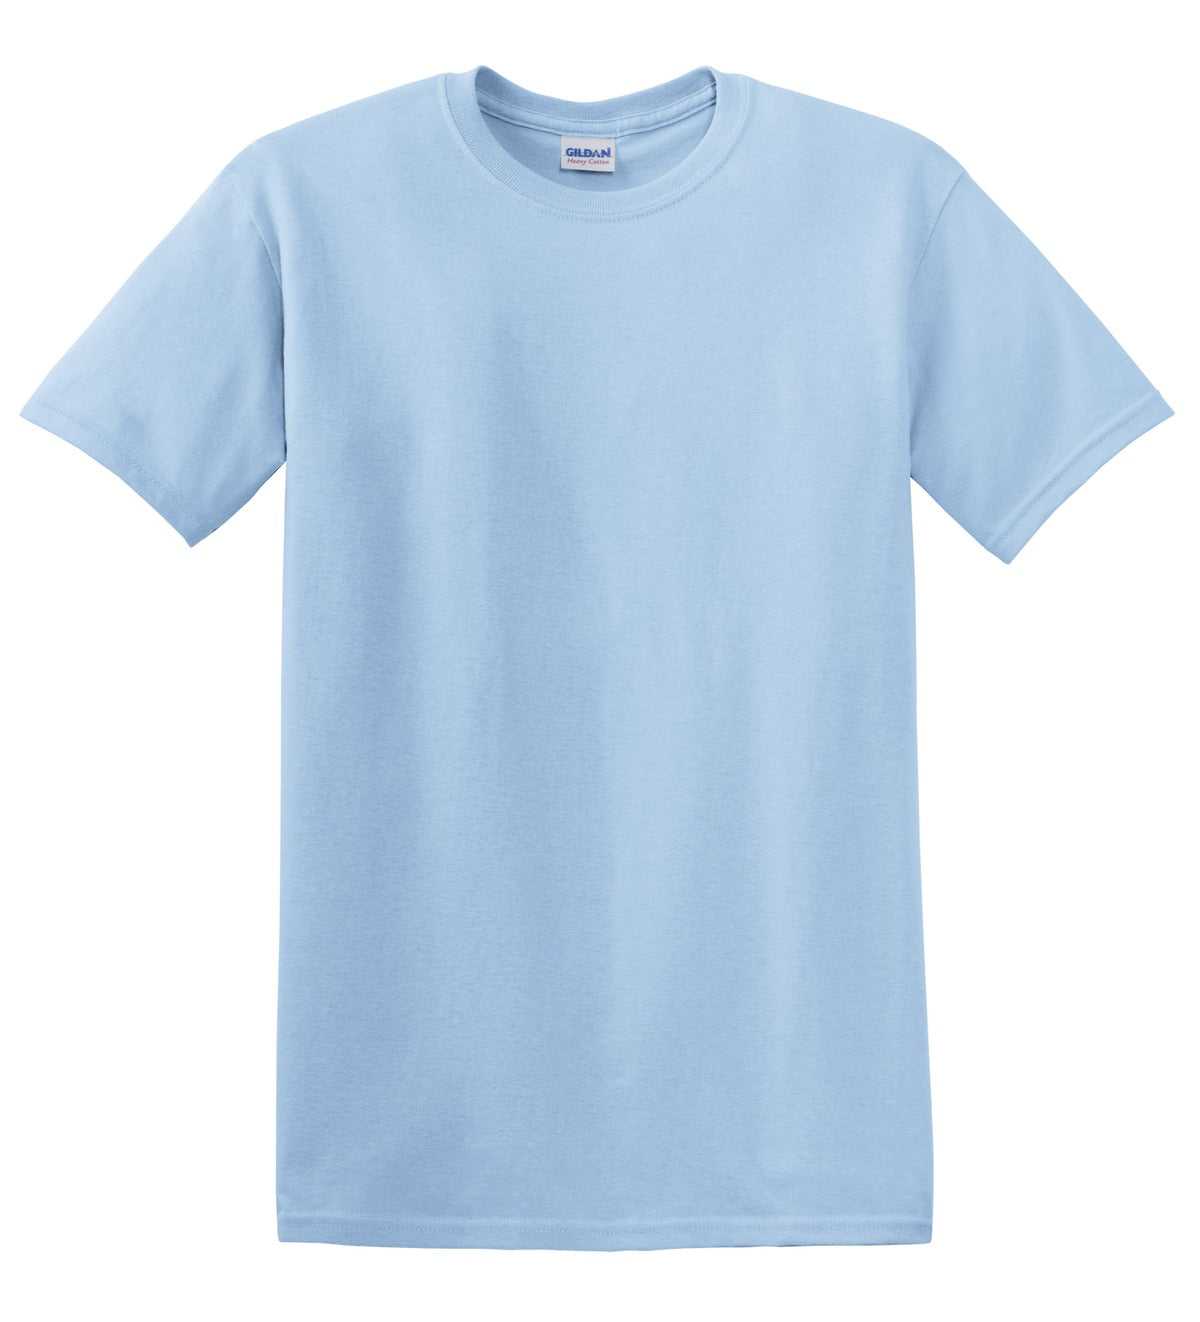 Gildan 5000 Heavy Cotton 100% Cotton T-Shirt - Light Blue - HIT a Double